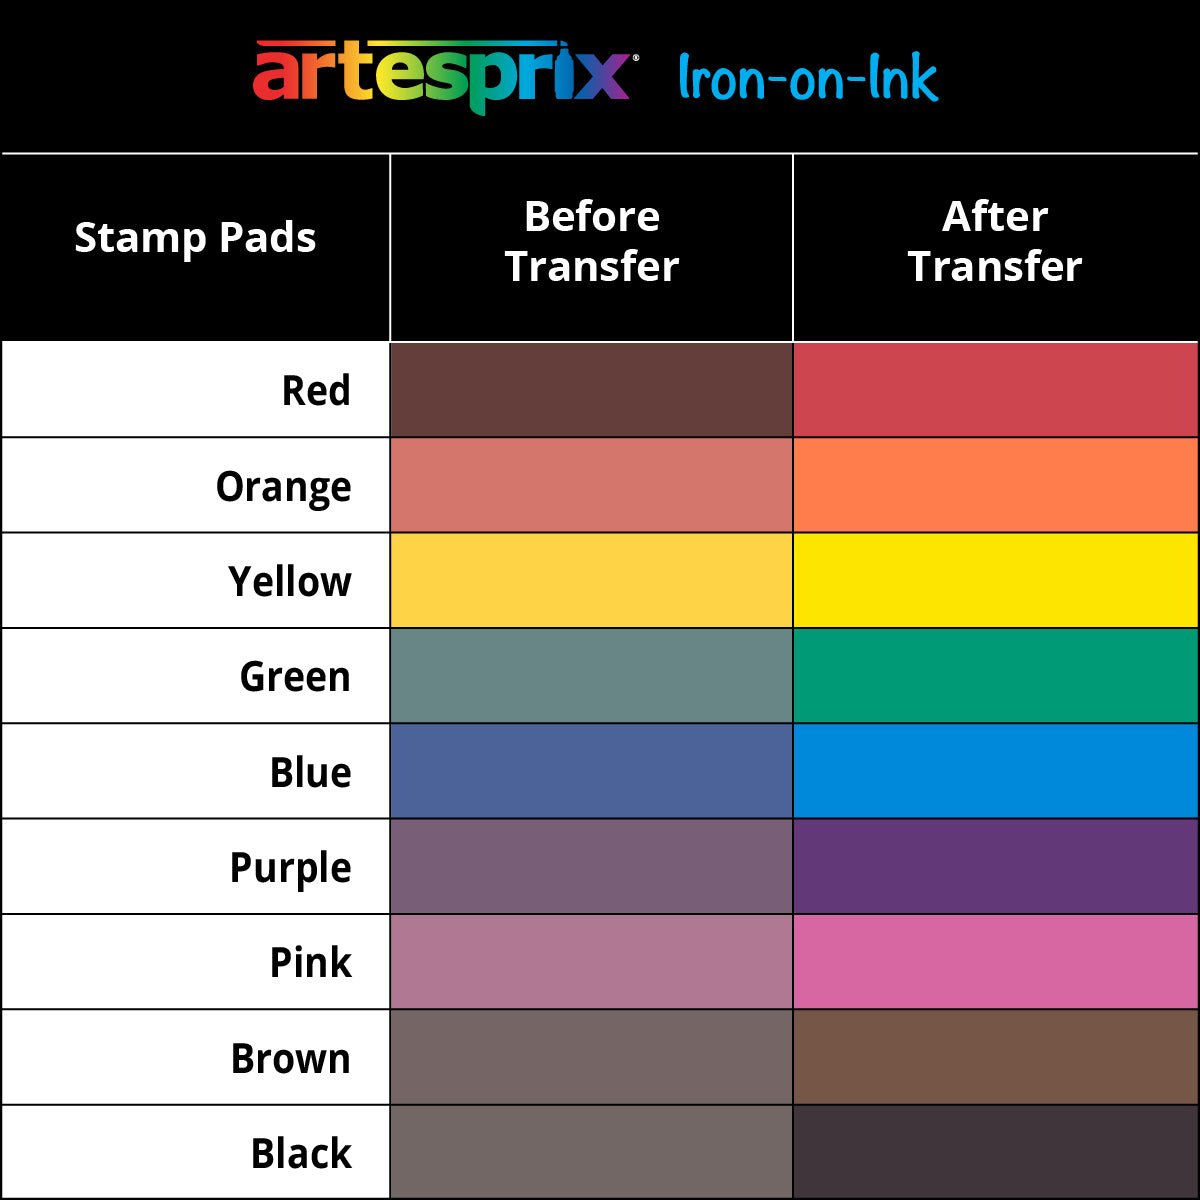 Sublimation Stamp Pad - Artesprix